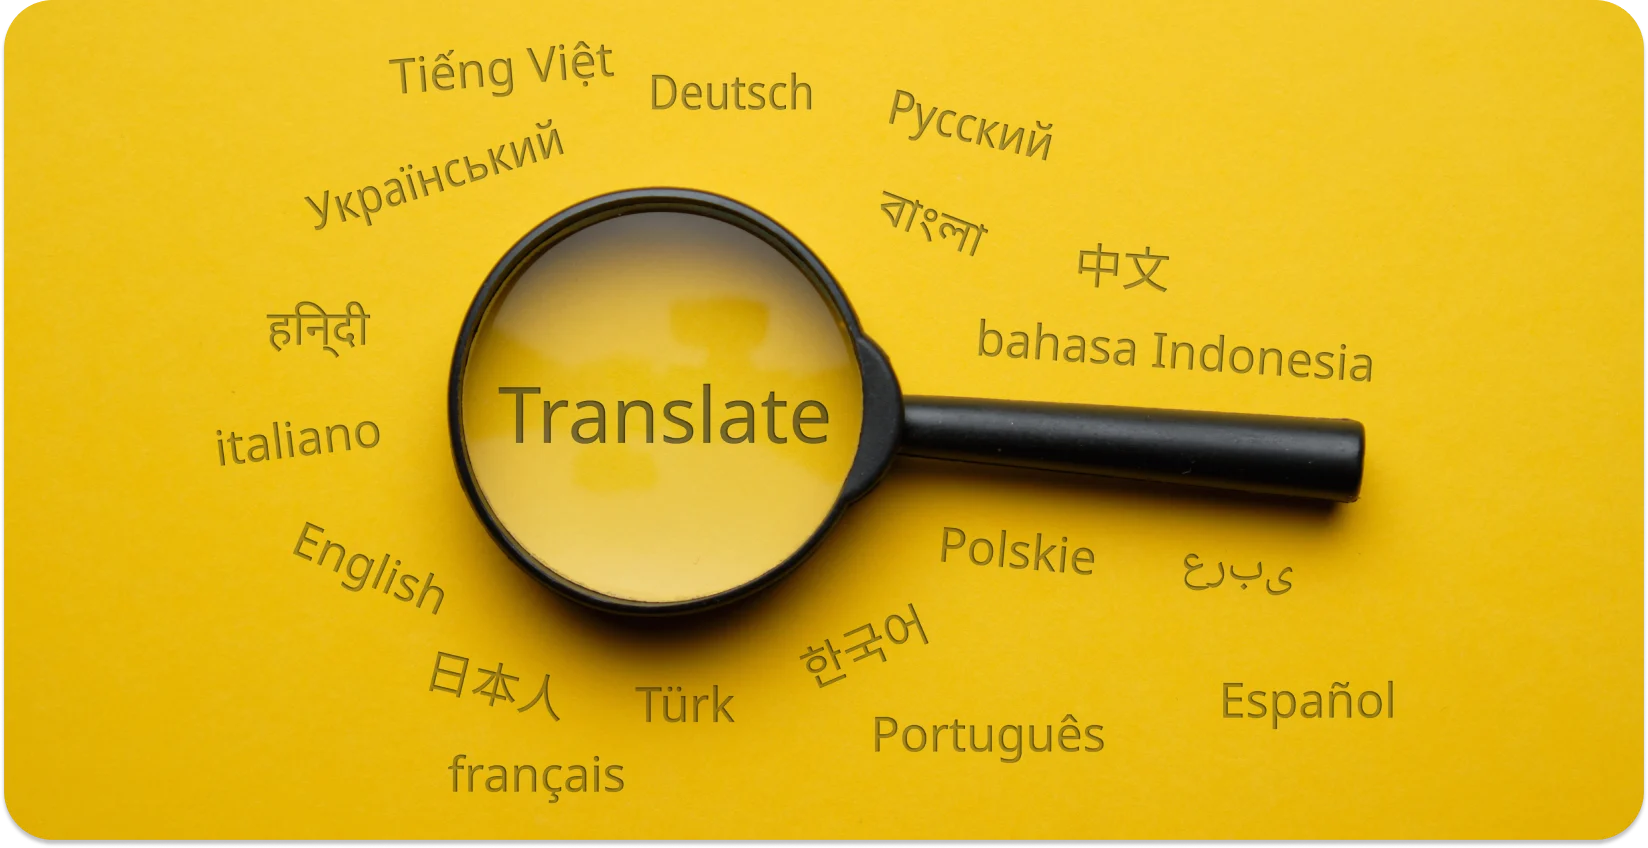 Lupa evidențiind "Traduceți" în diferite limbi, simbolizând conversia lingvistică.